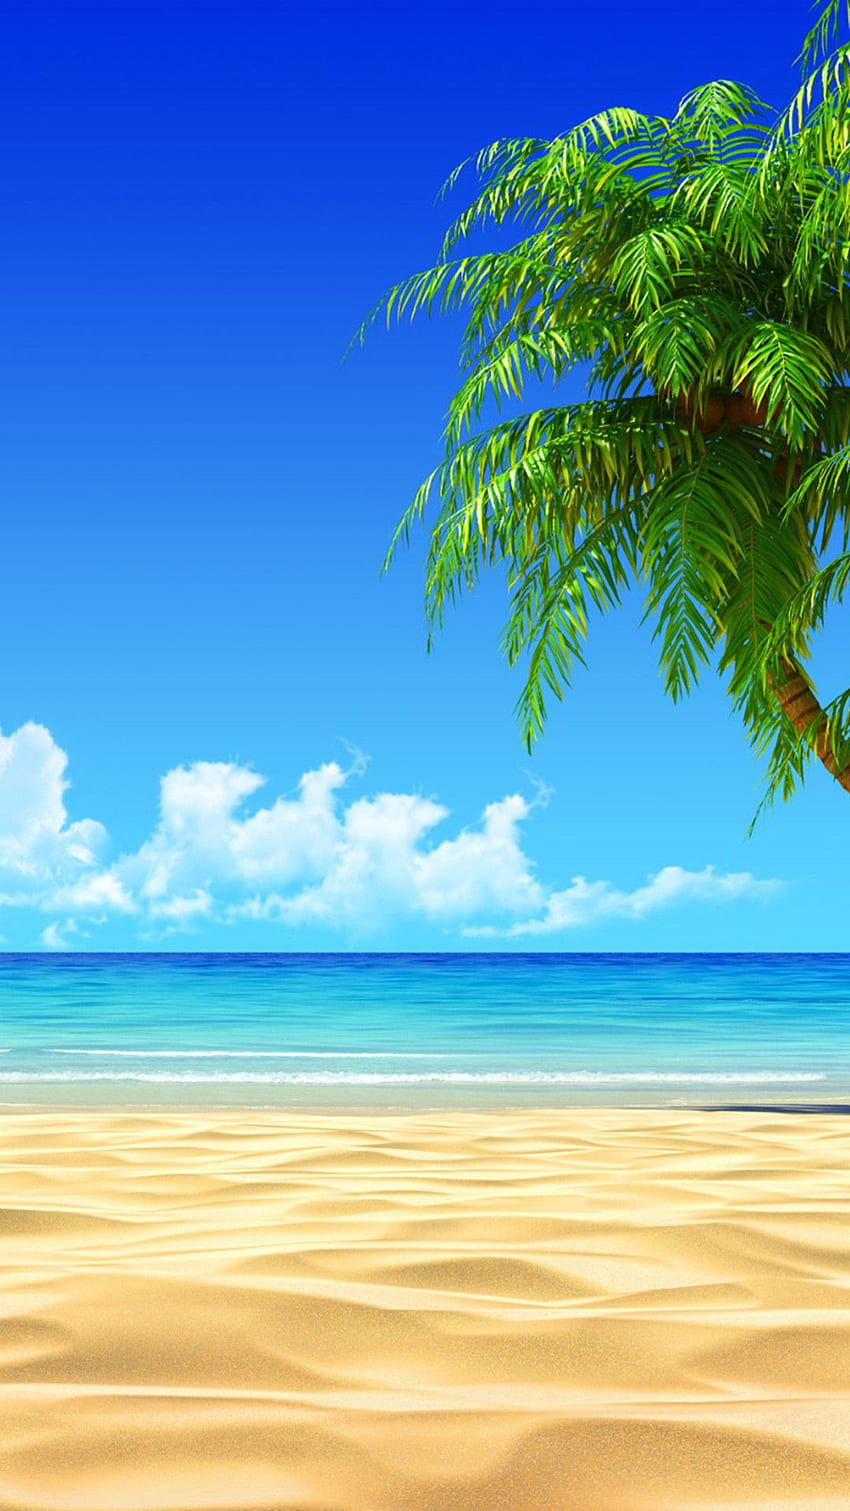 Beach House On Tropical Island - Beach iPhone HD phone wallpaper